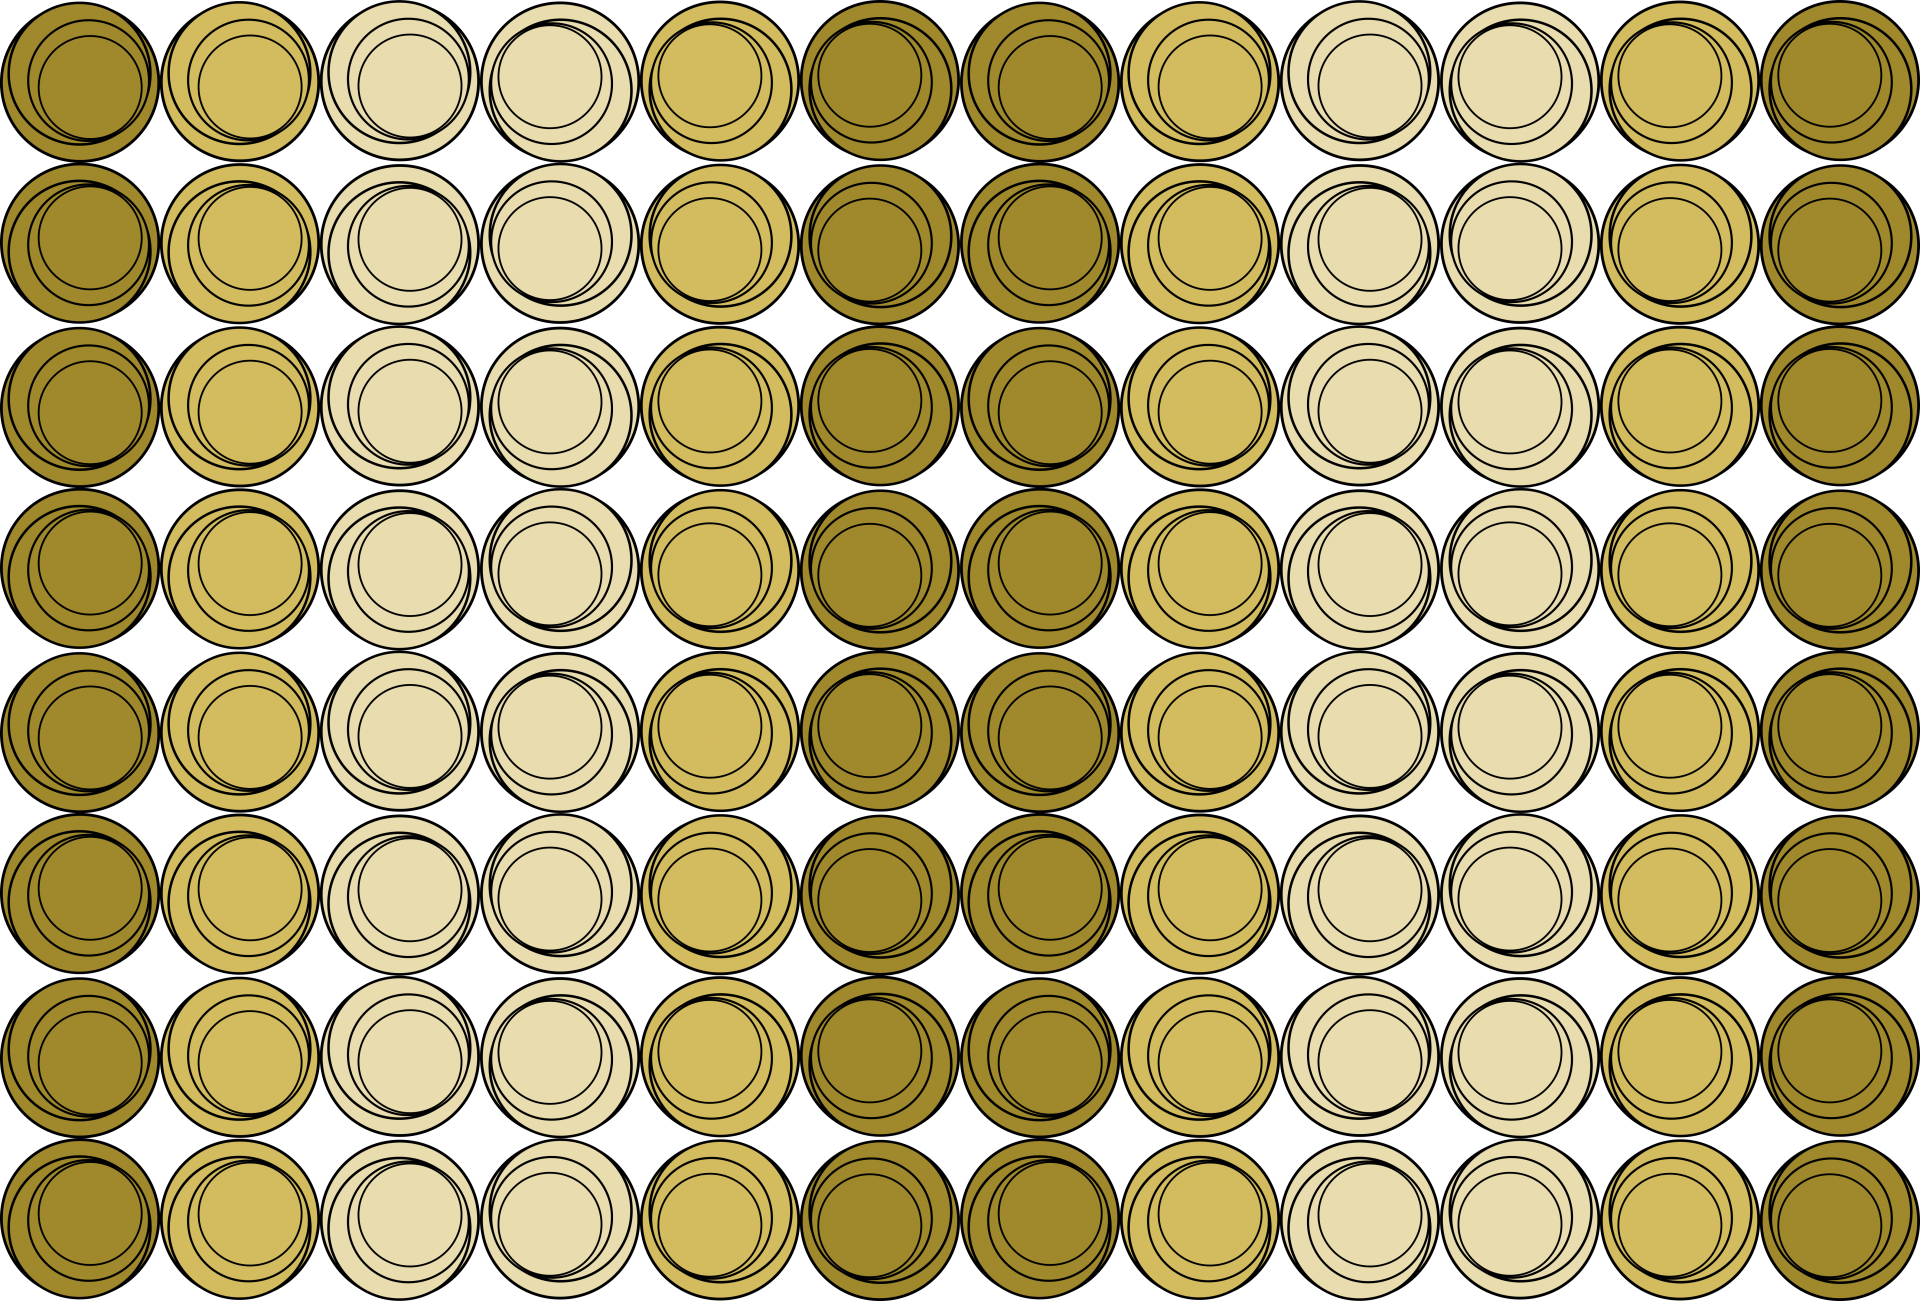 Patrón de repetición de círculos marrón